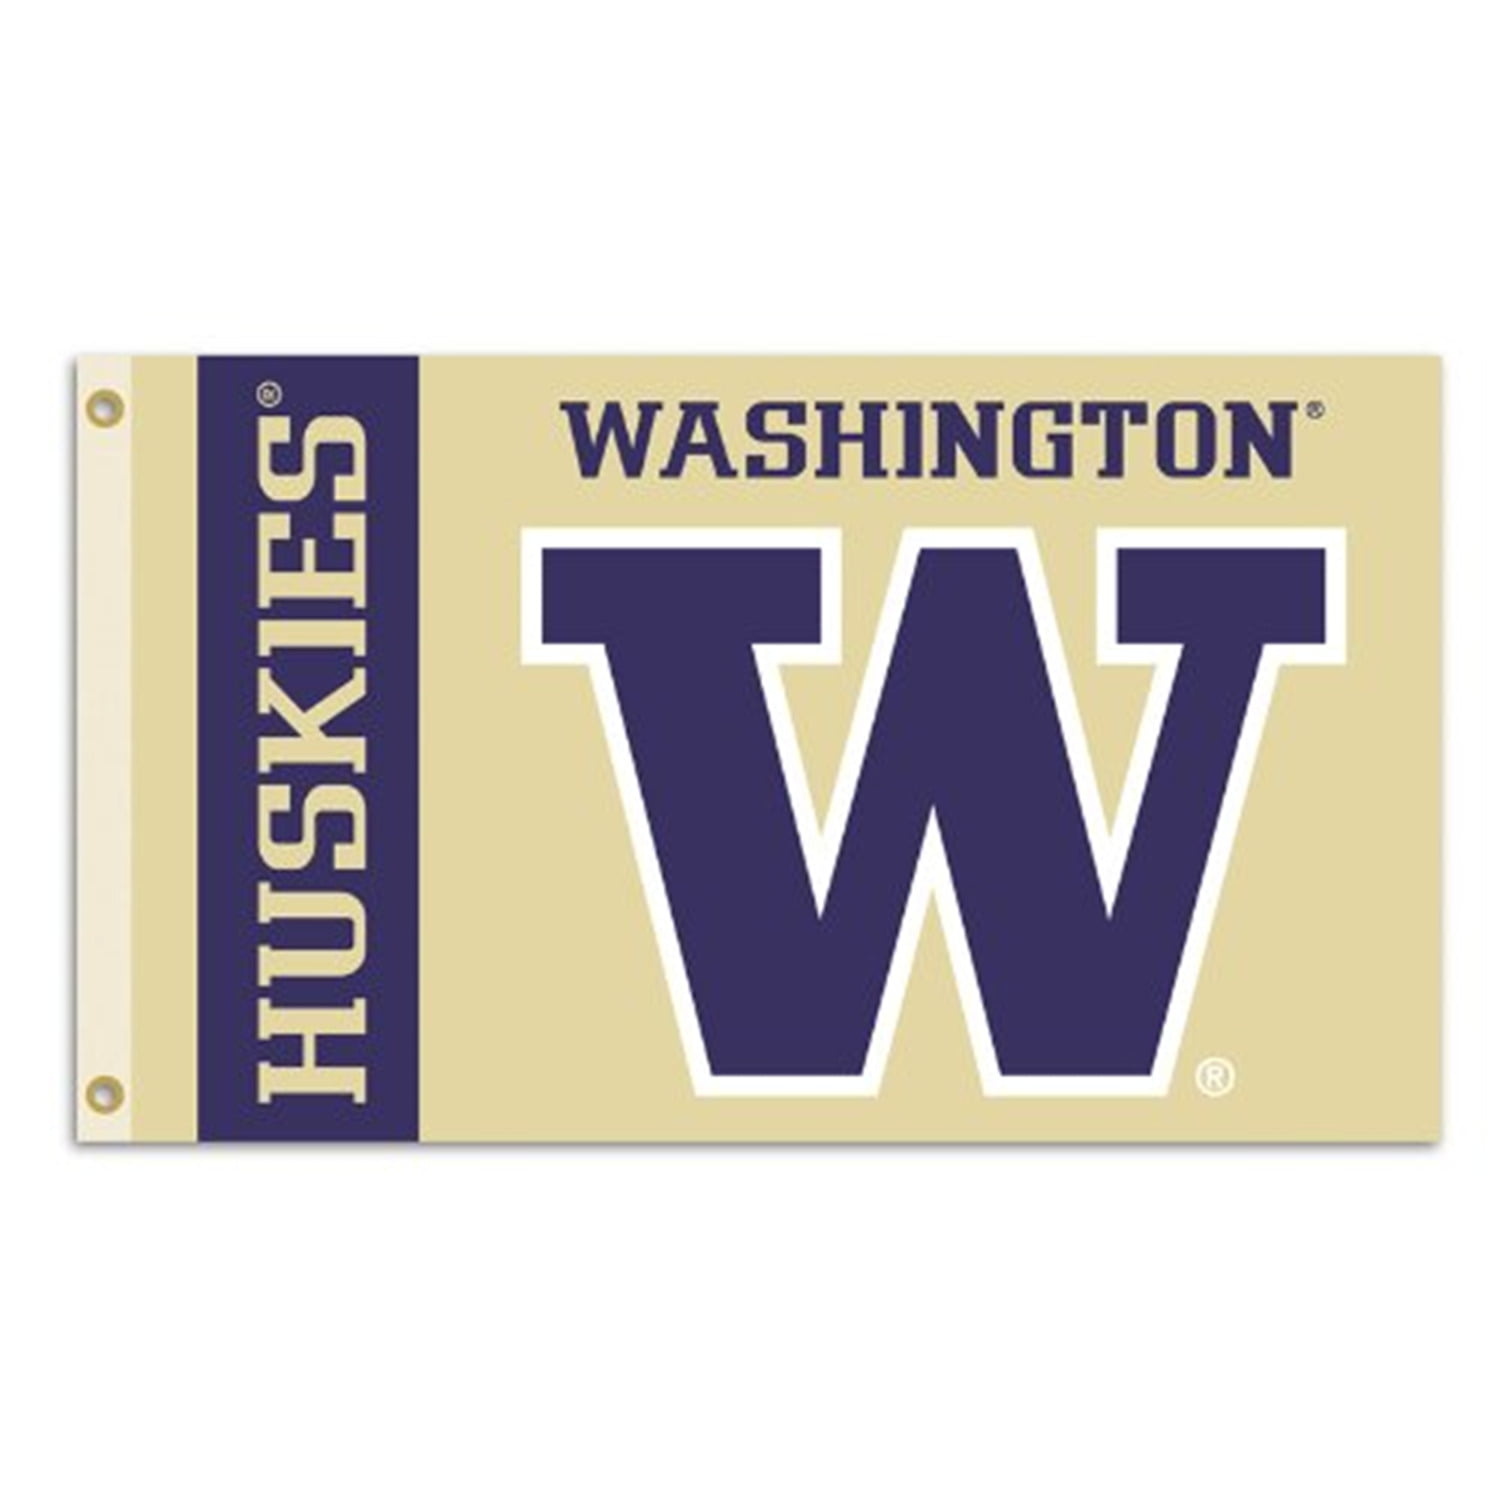 BSI NCAA College Washington Huskies 3 X 5 Foot Flag with Grommets 